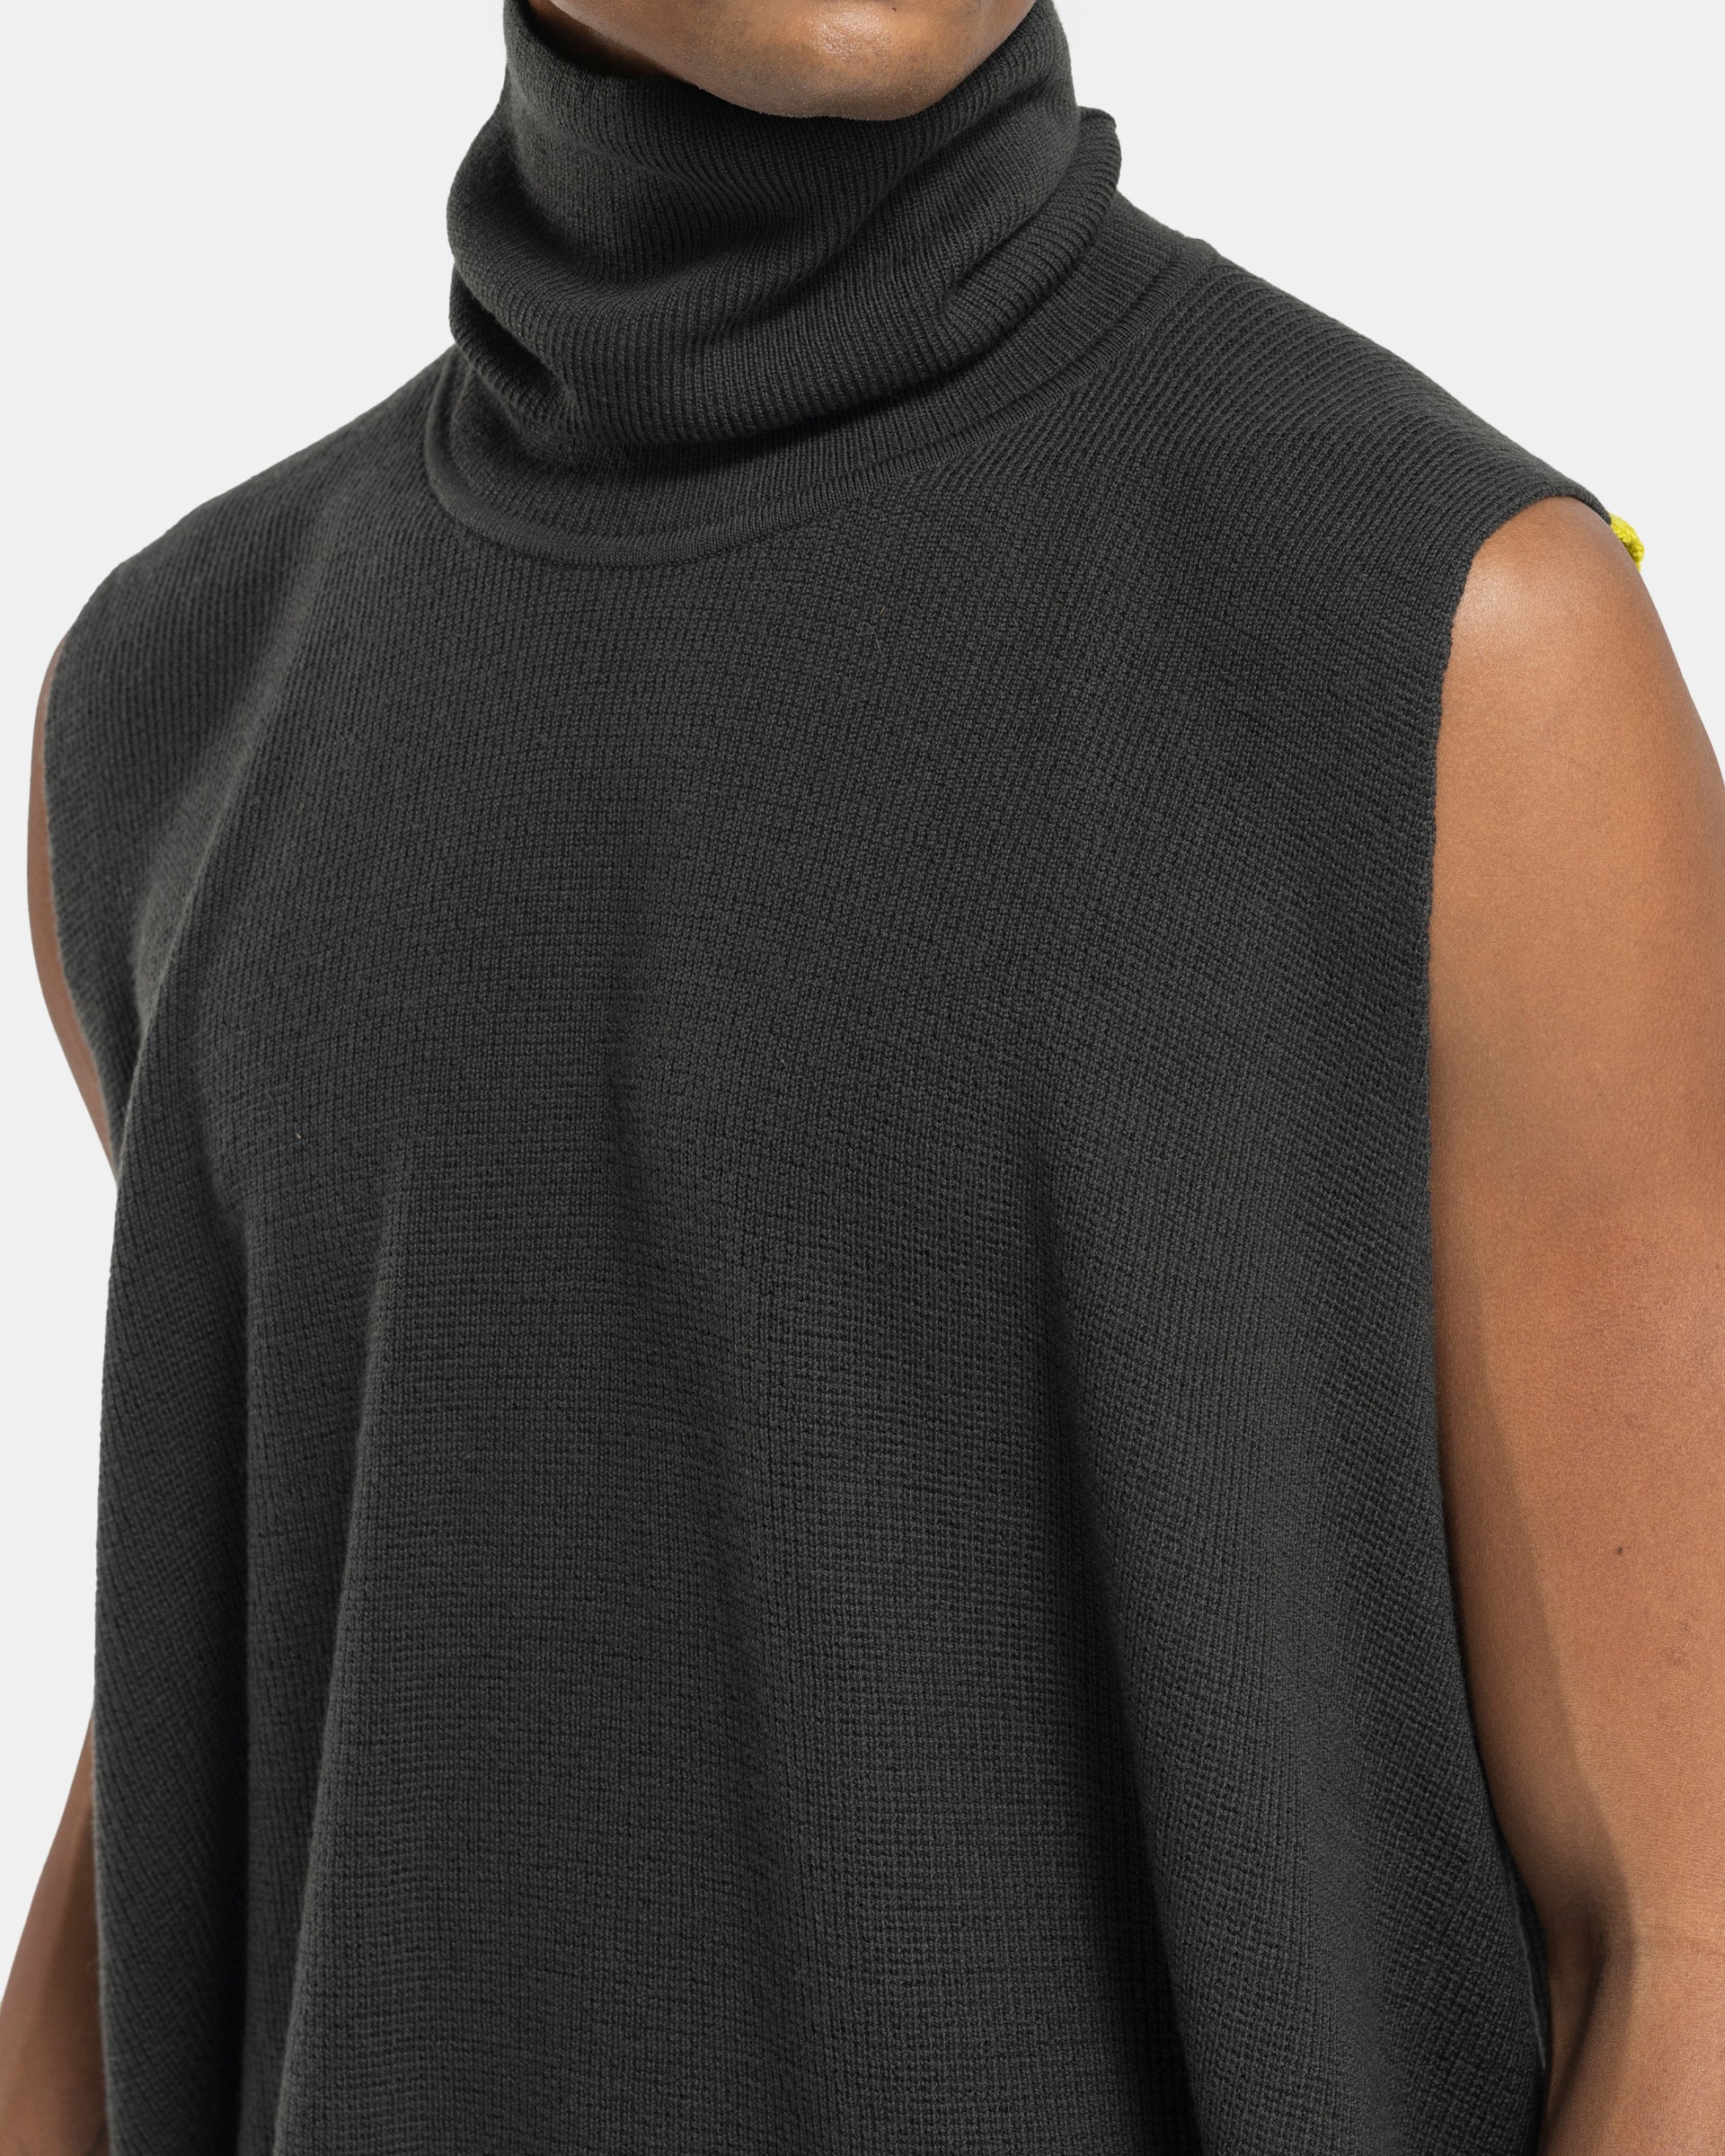 Framework Knit Vest in Black